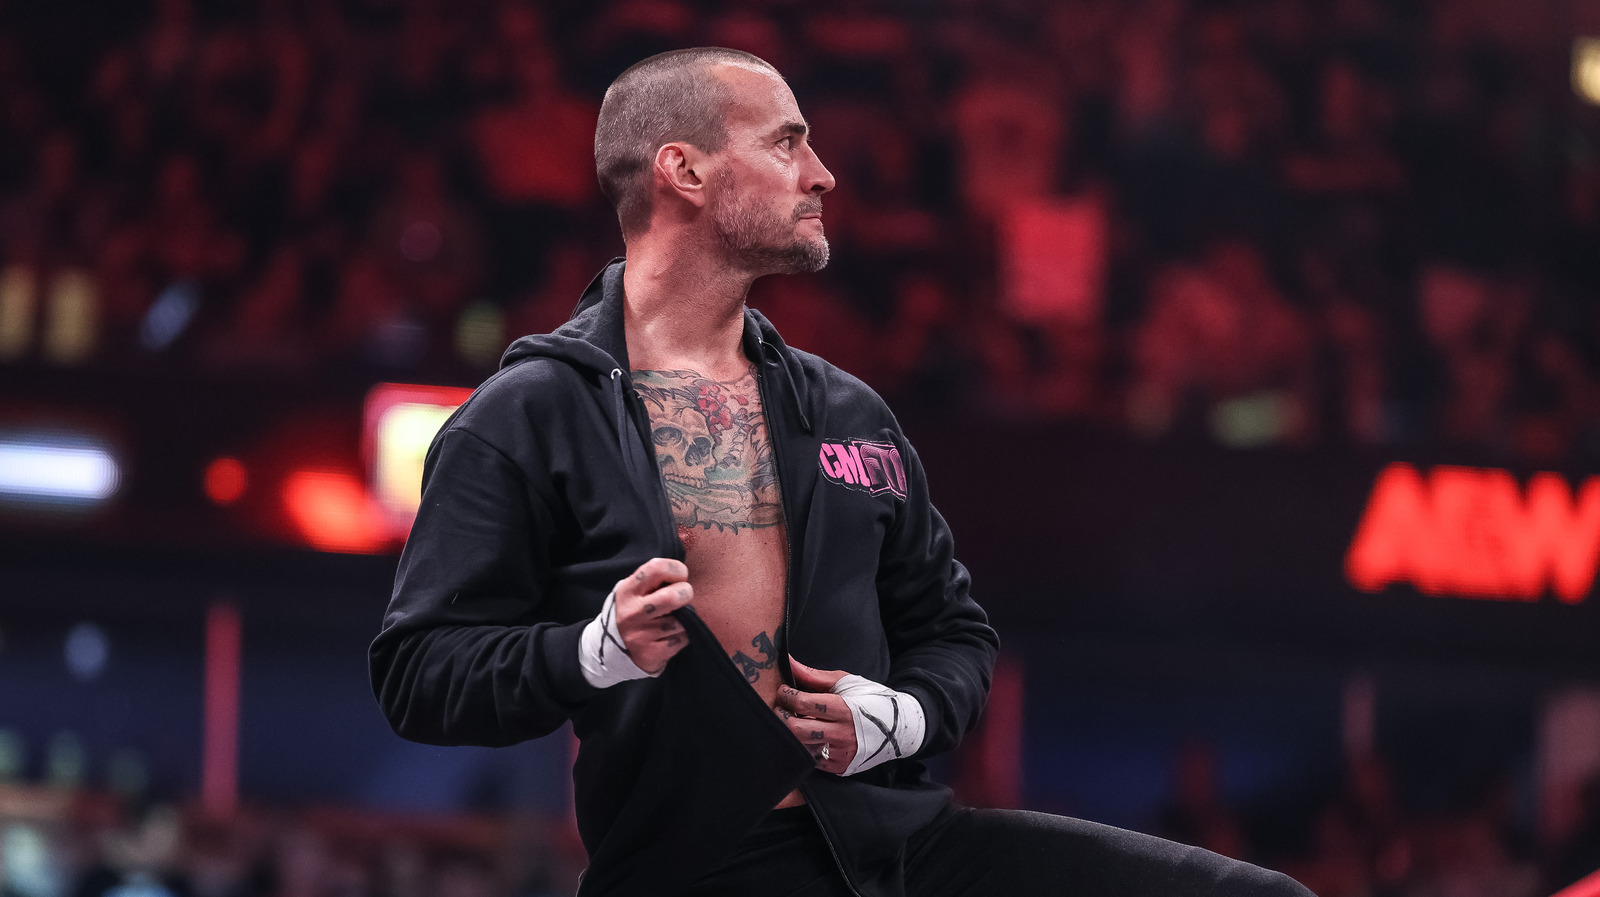 Se rumorea que CM Punk estará en el AEW Dynamite de esta semana, no en The Elite